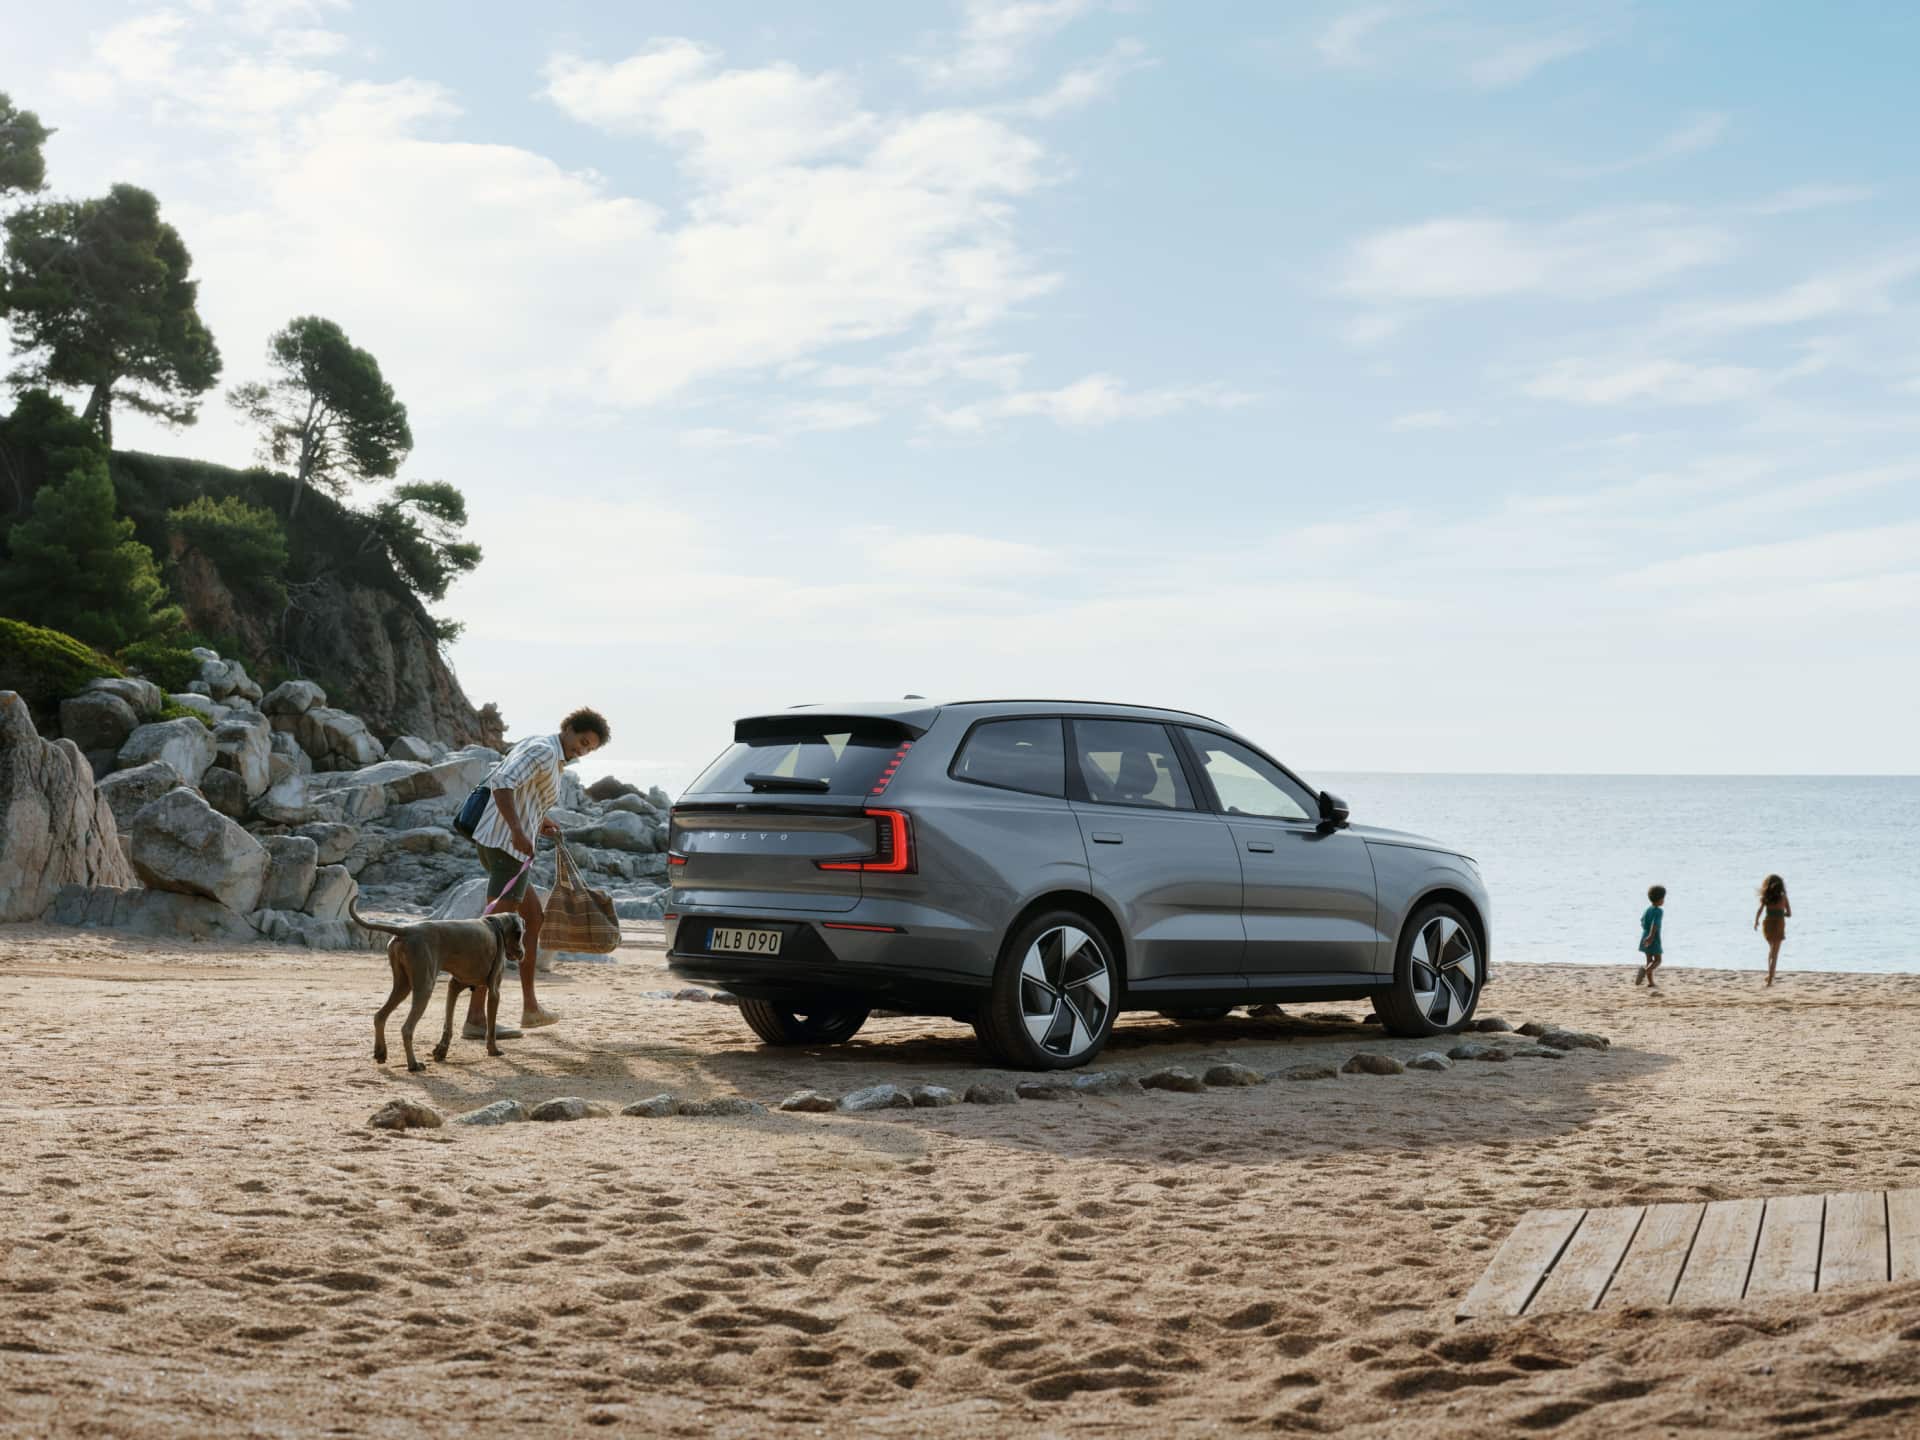 სურათი, რომელზეც ჩანს, როგორ სეირნობს კაცი და ძაღლი სანაპიროზე გაჩერებული Volvo EX90-ის გვერდით.